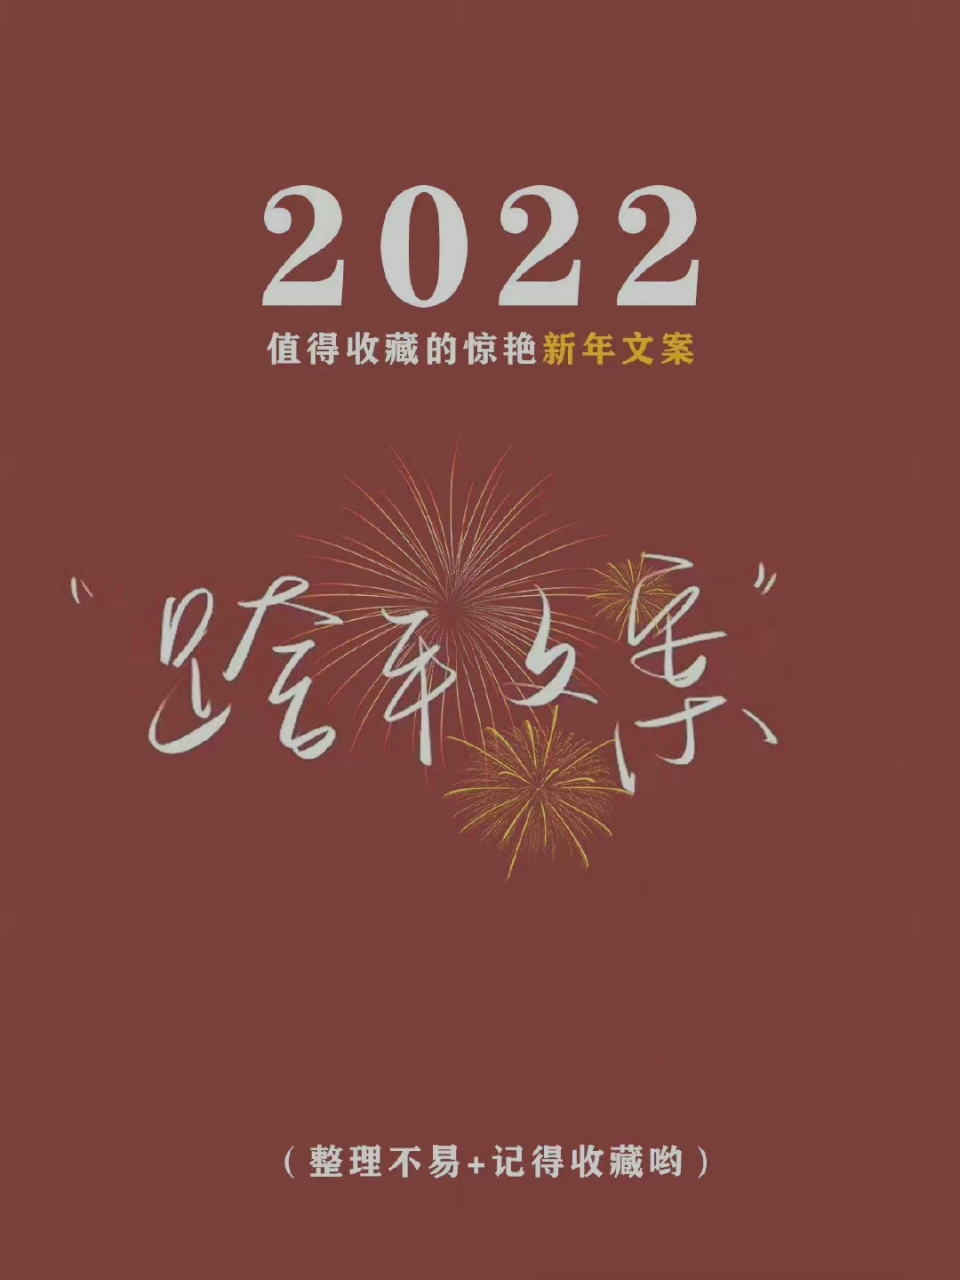 2022新年跨年文案图片